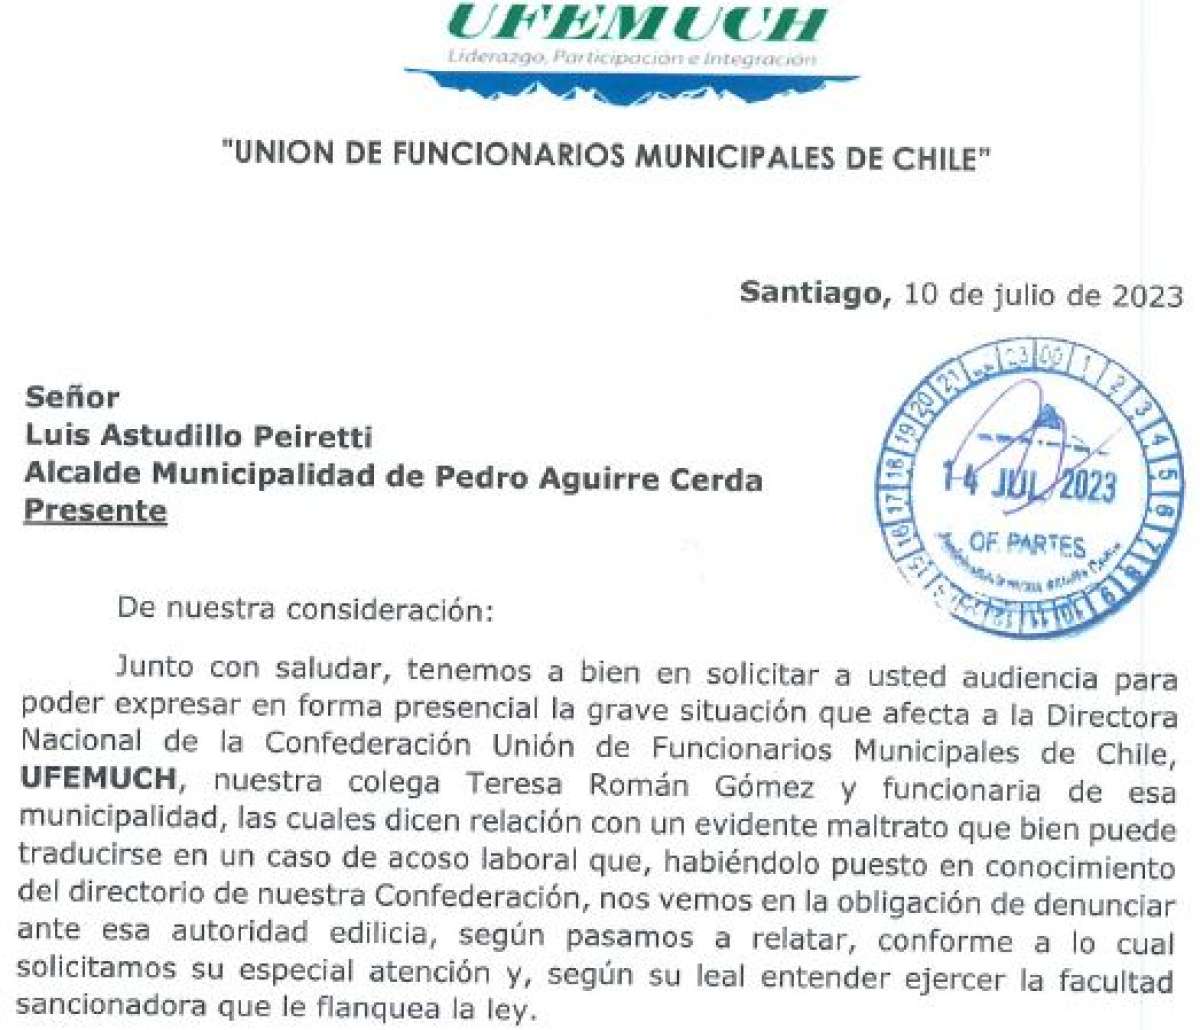 Directorio Nacional de Ufemuch rechaza radicalmente toda situacion de acoso en comuna de Pedro Aguirre Cerda